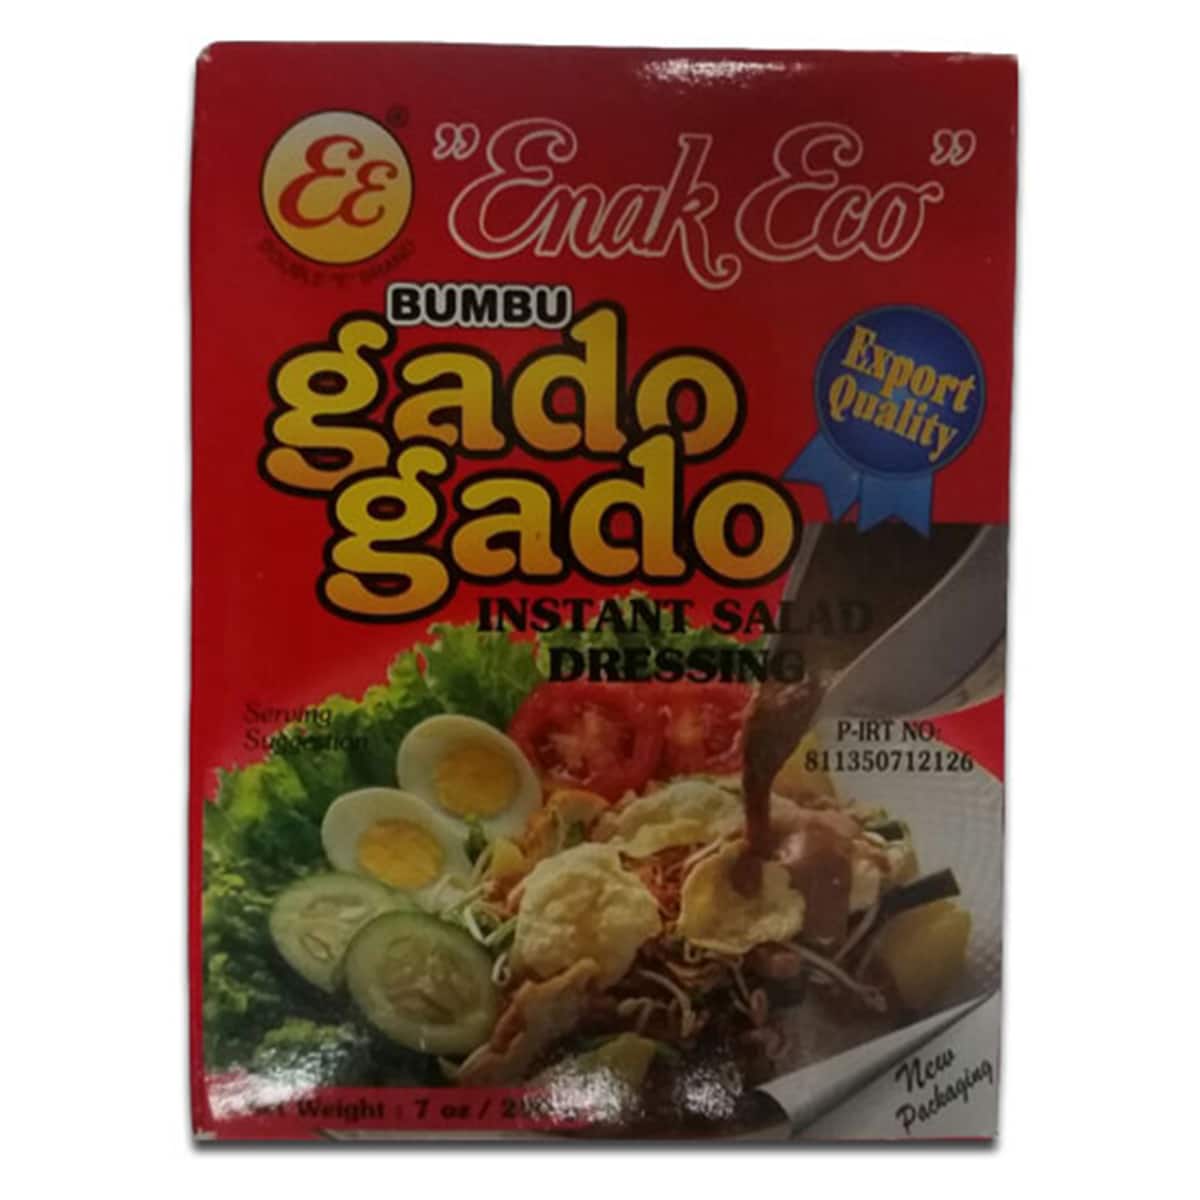 Buy Enak Eco Bumbu Gado Gado (Instant Salad Dressing) - 200 gm